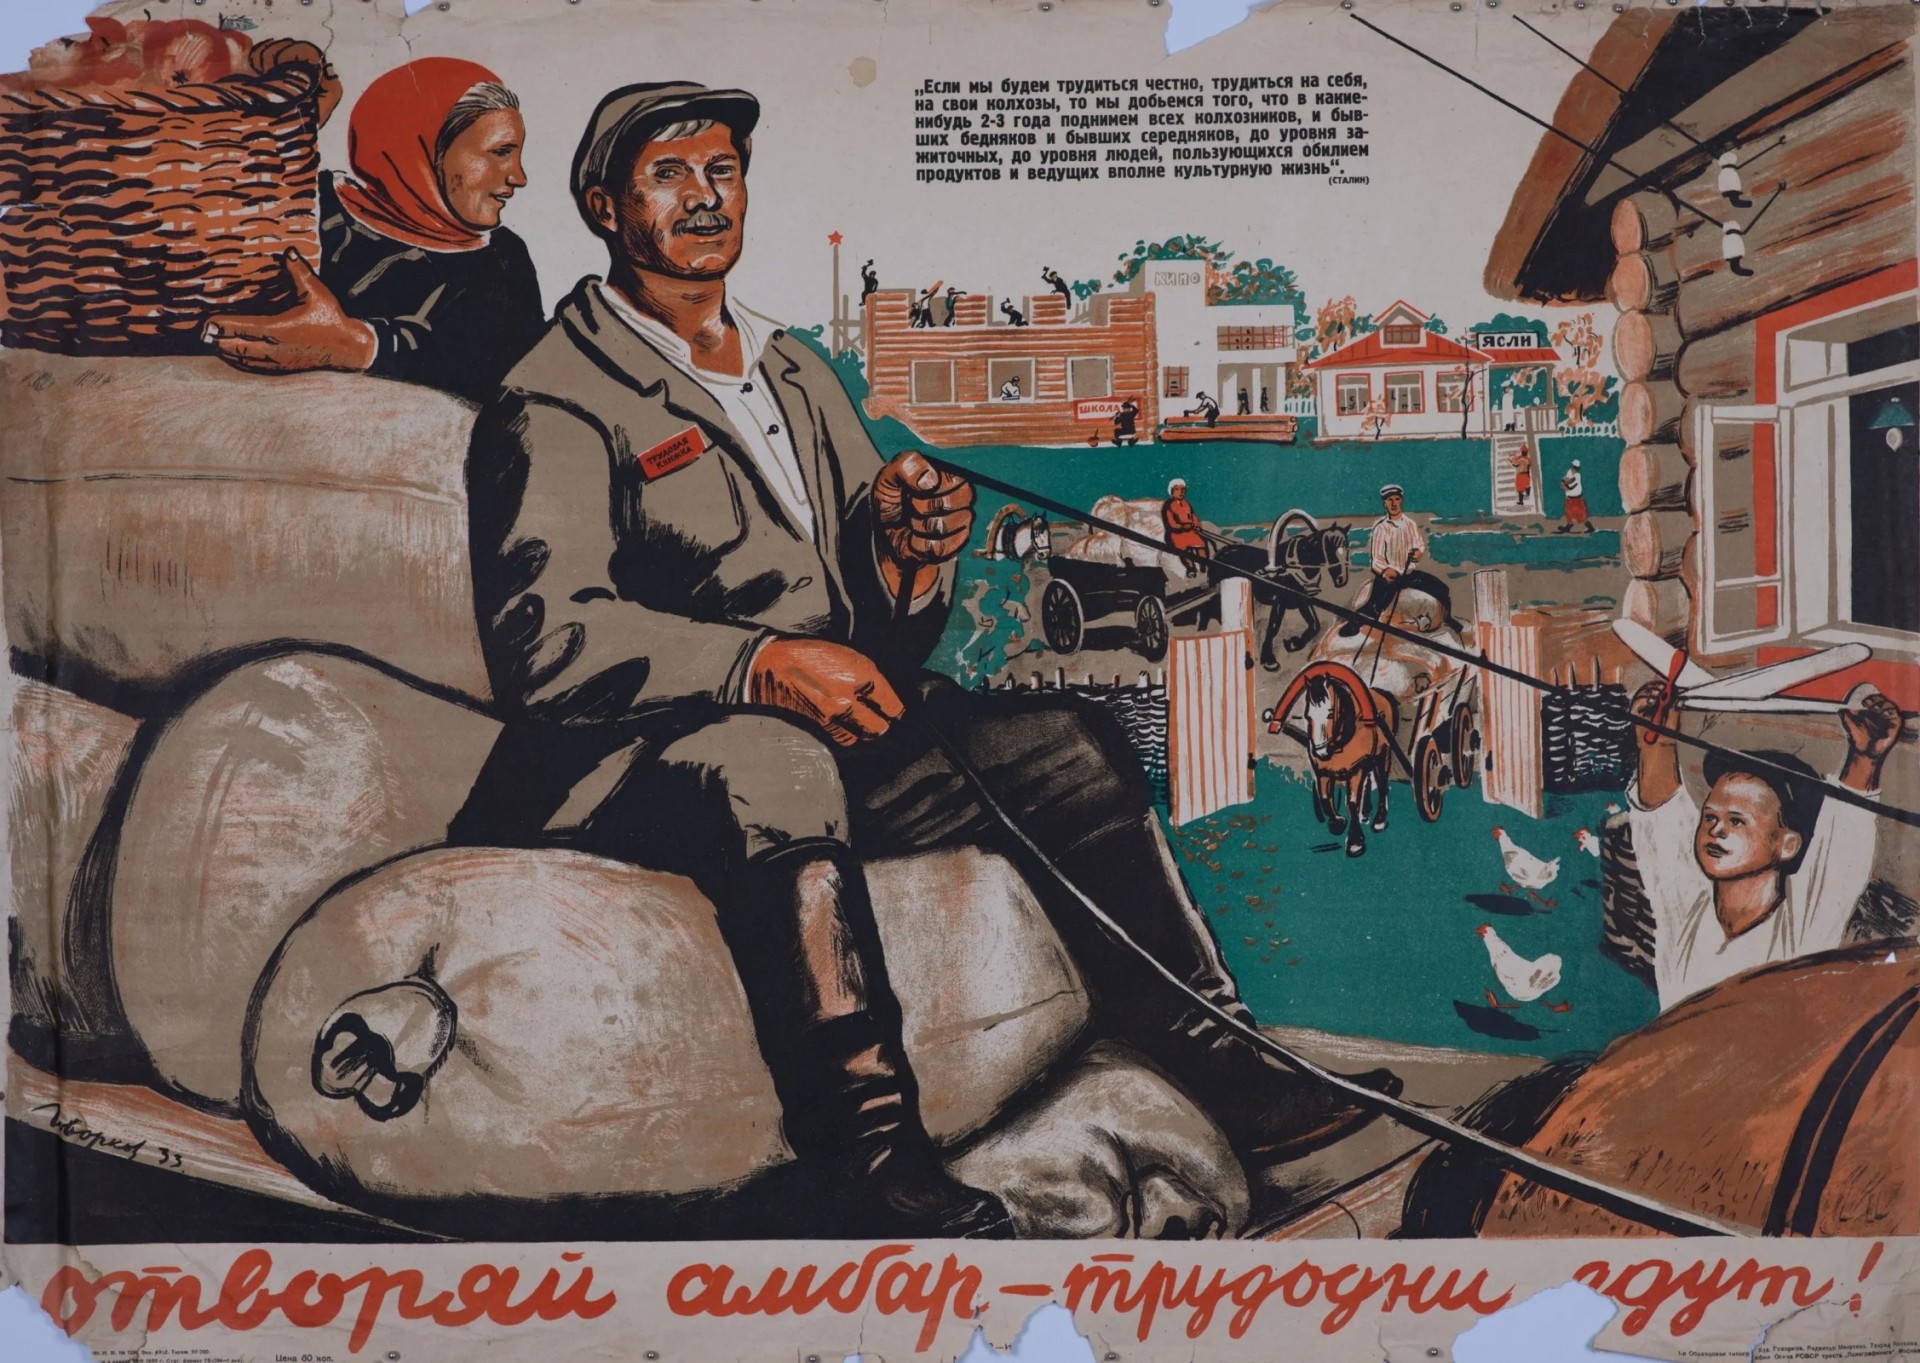 Колхоз это в ссср. Советские плакаты. Колхоз плакат. Советские плакаты колхоз. Советские агитационные плакаты.